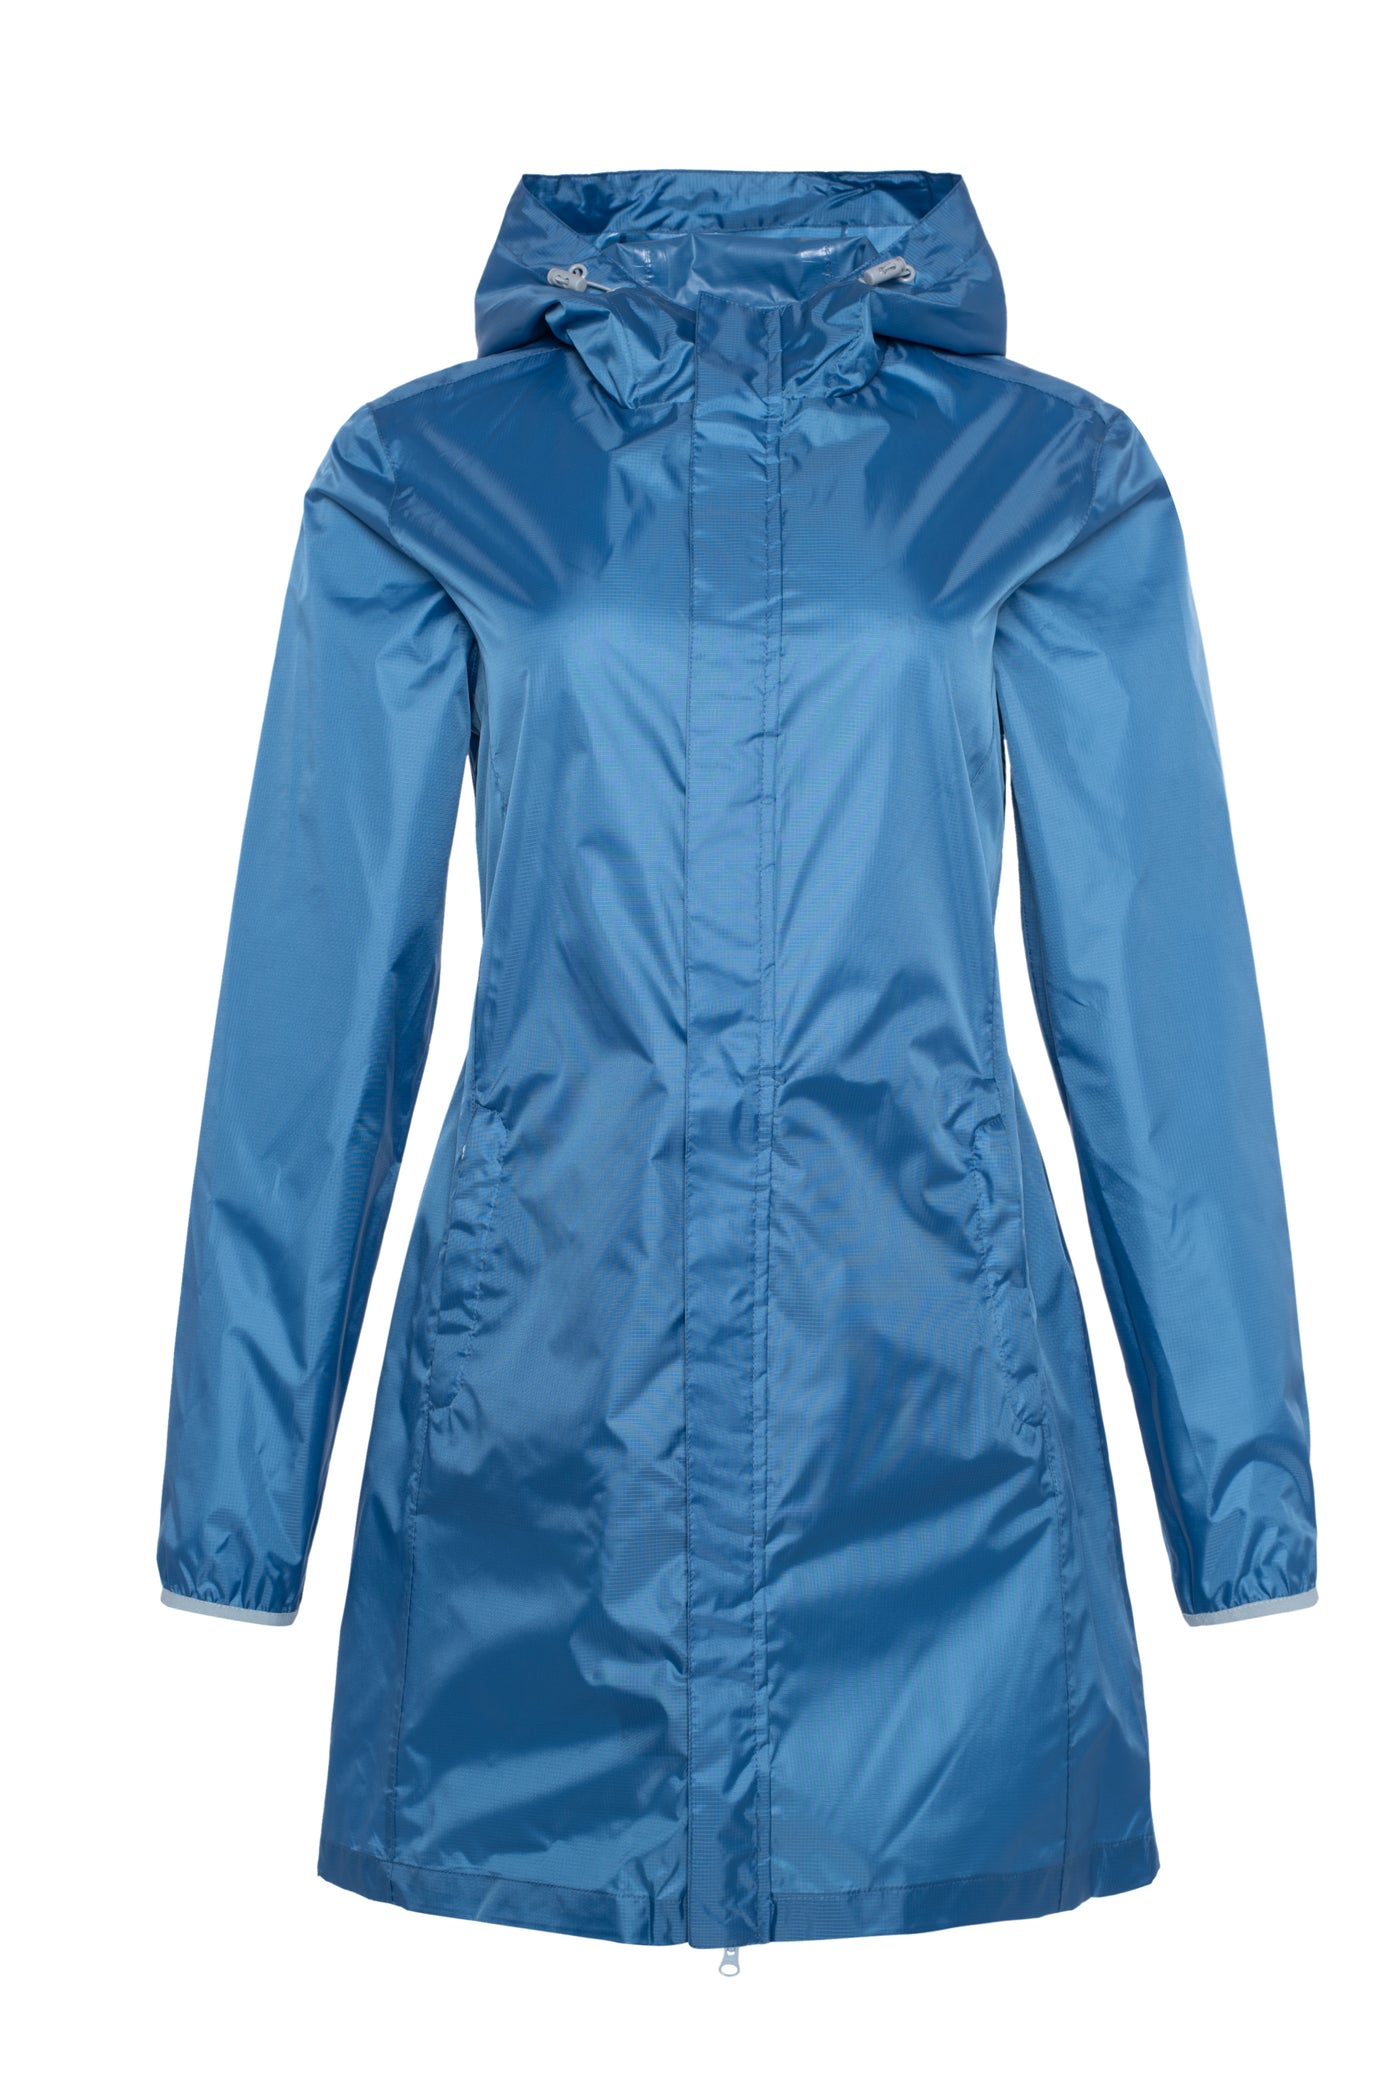 Waterproof long jacket for women